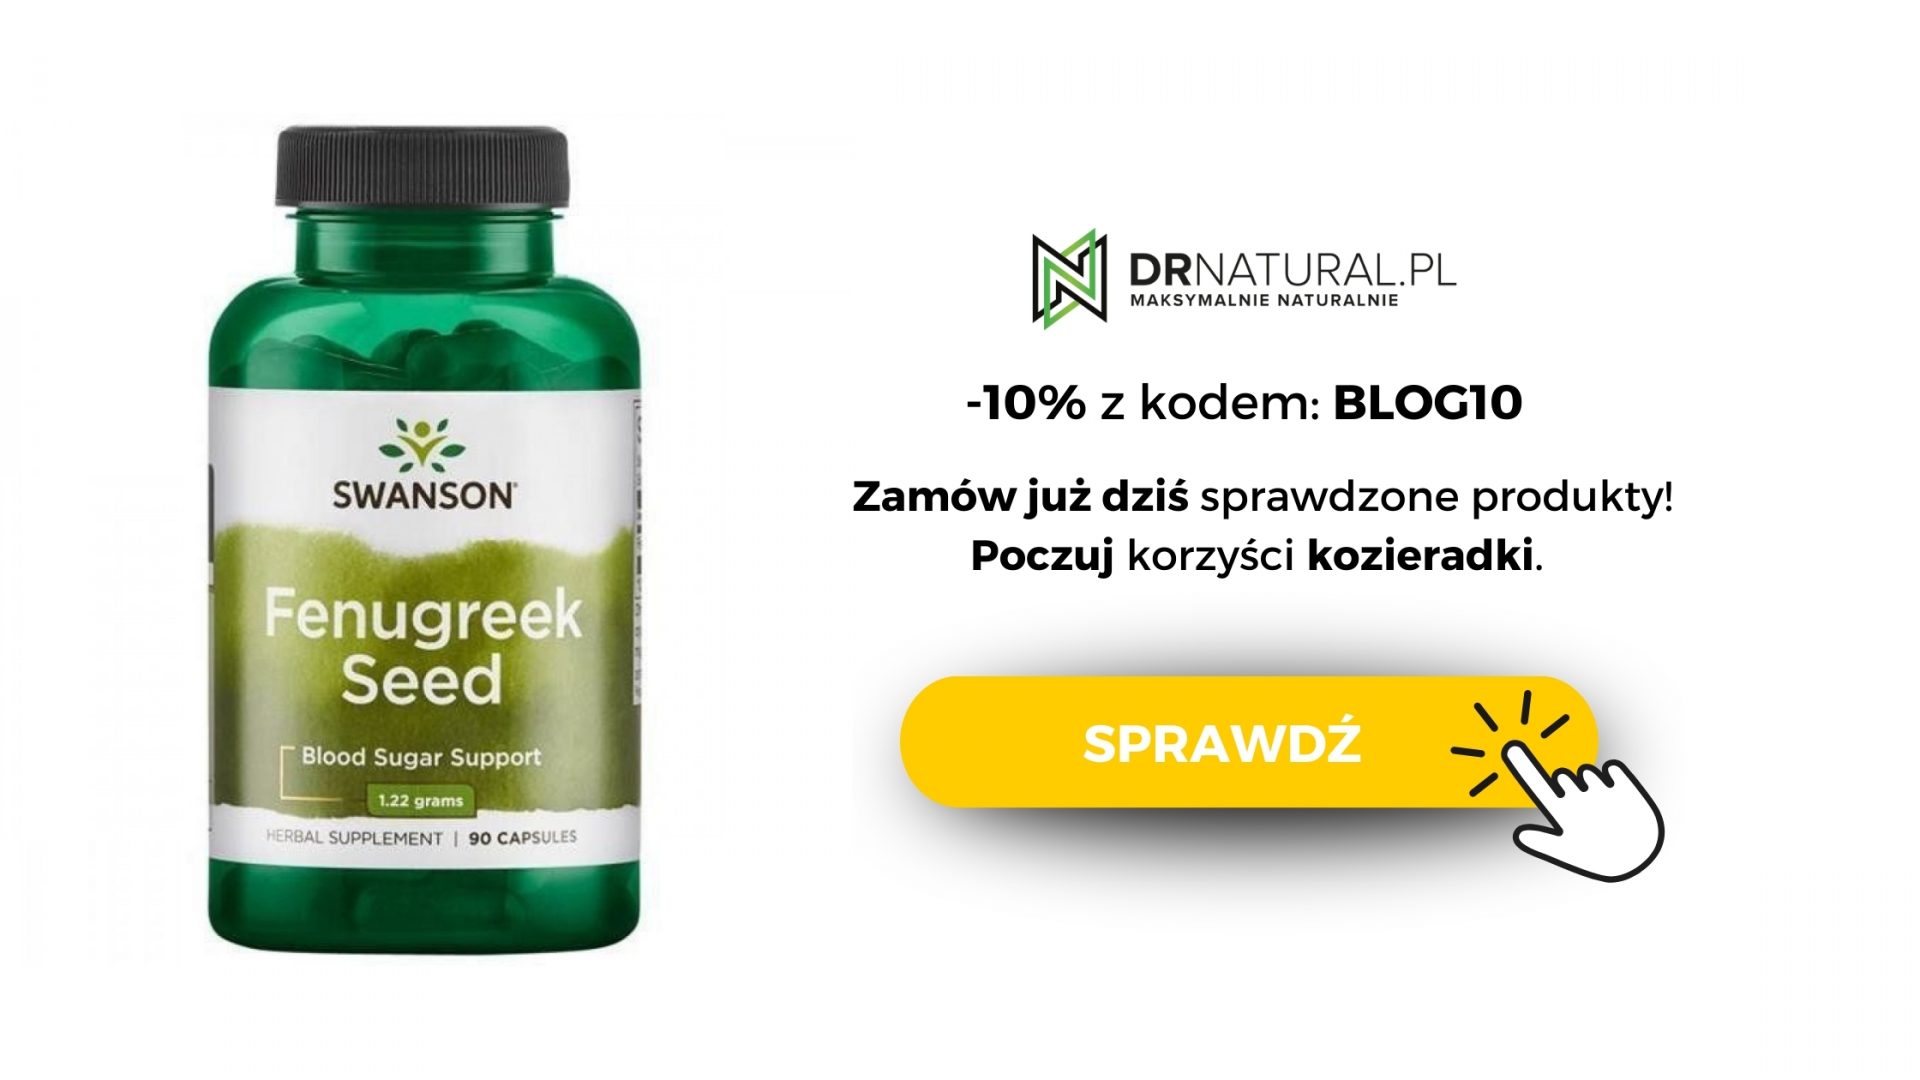 Reklama internetowa suplementu diety Swanson Fenugreek Seed z obrazkiem butelki z kapsułkami i logo DrNATURAL.pl. Obok znajduje się żółty przycisk 'SPRAWDŹ' z wezwaniem do działania 'Zamów już dziś sprawdzone produkty! Poczuj korzyści kozieradki.' oraz kodem promocyjnym 'BLOG10' na 10% zniżki.